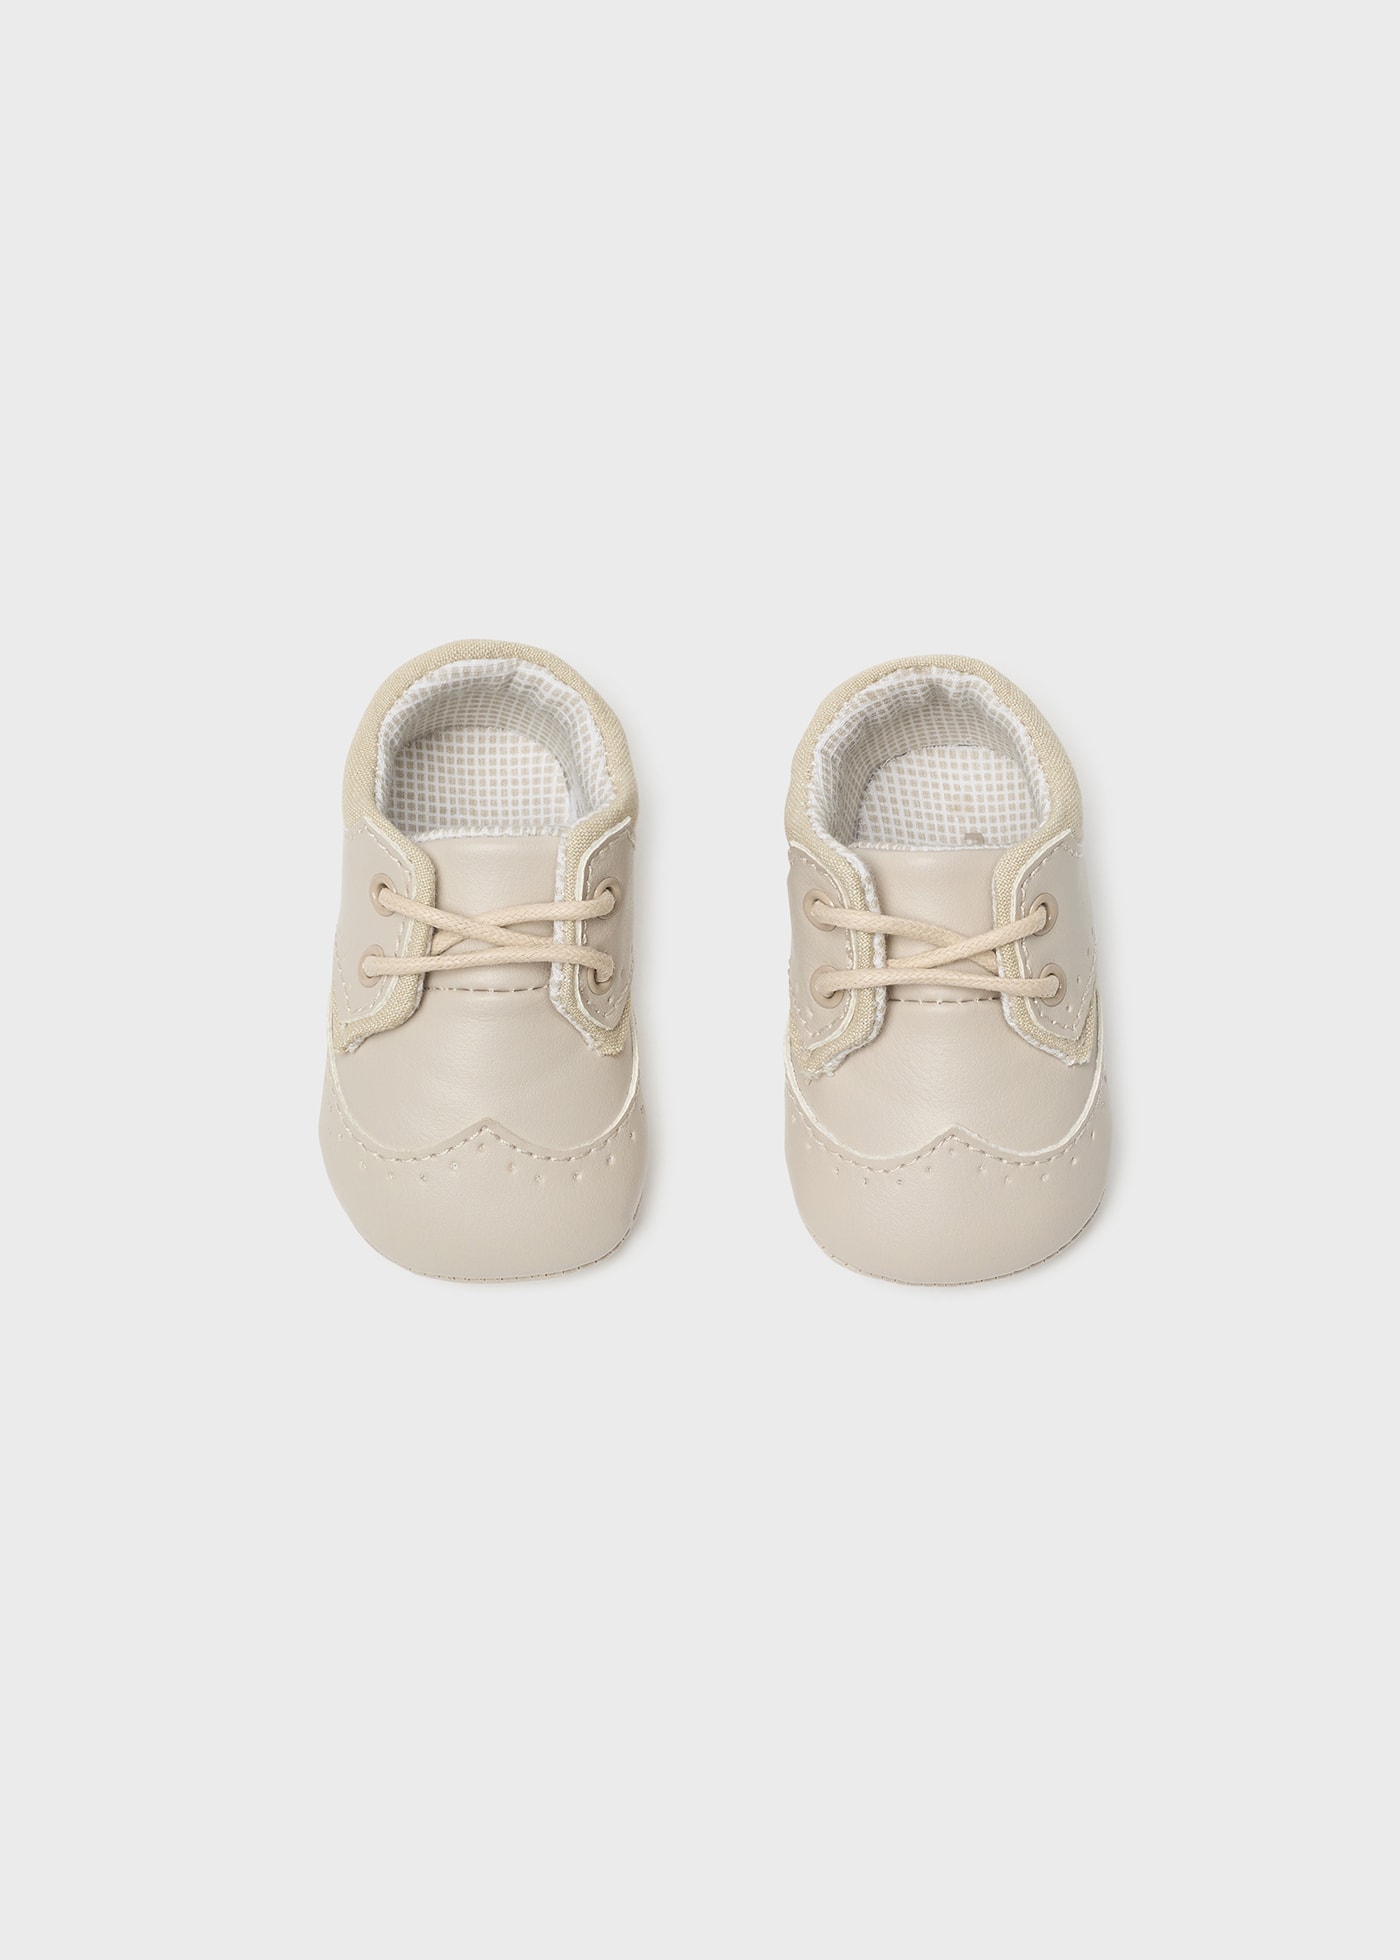 Buty sznurowane dla noworodka